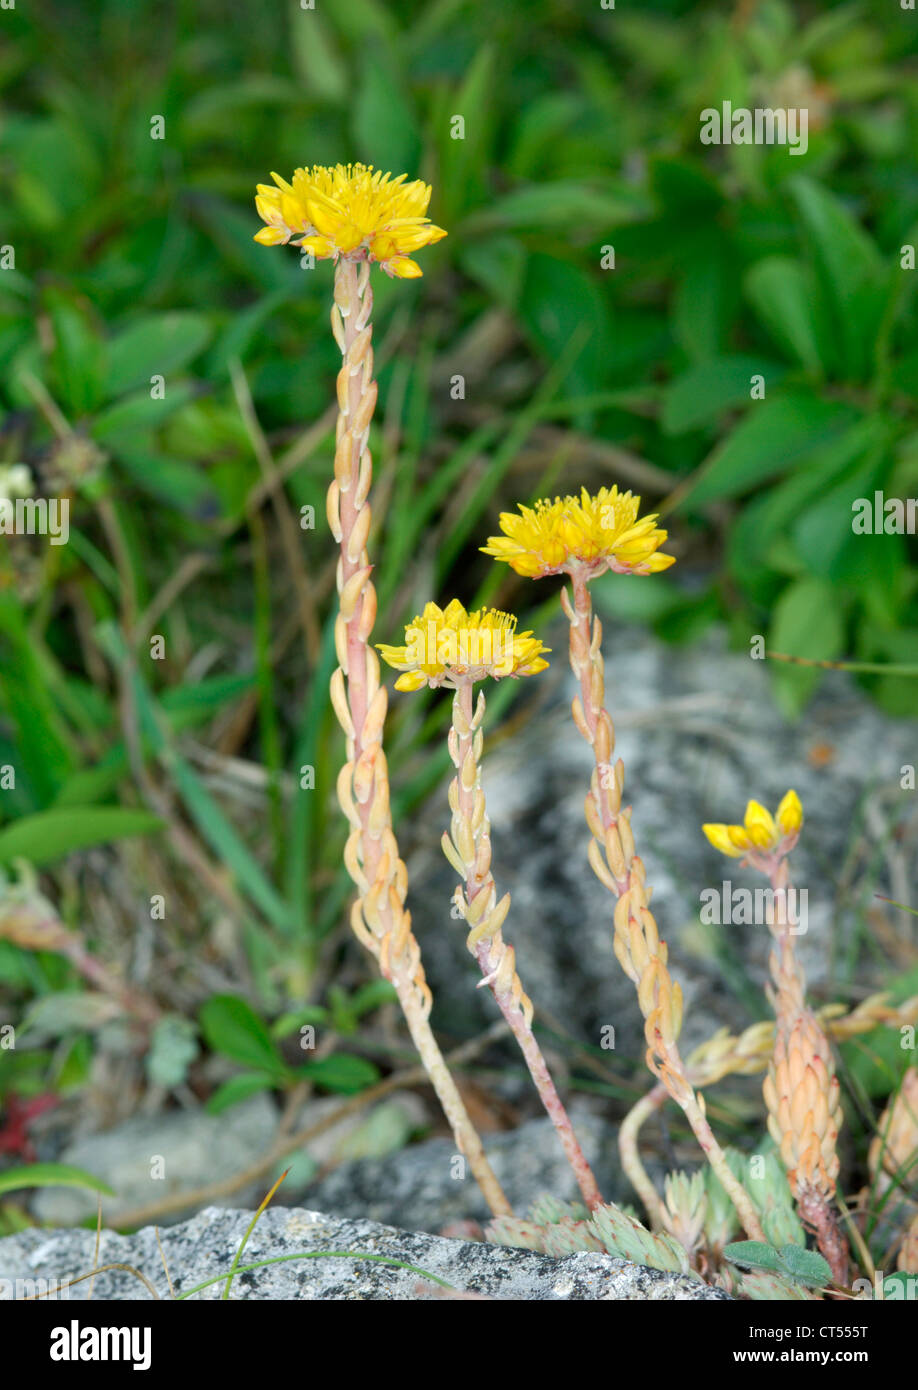 ROCK STONECROP Sedum forsterianum (Crassulaceae) Stock Photo